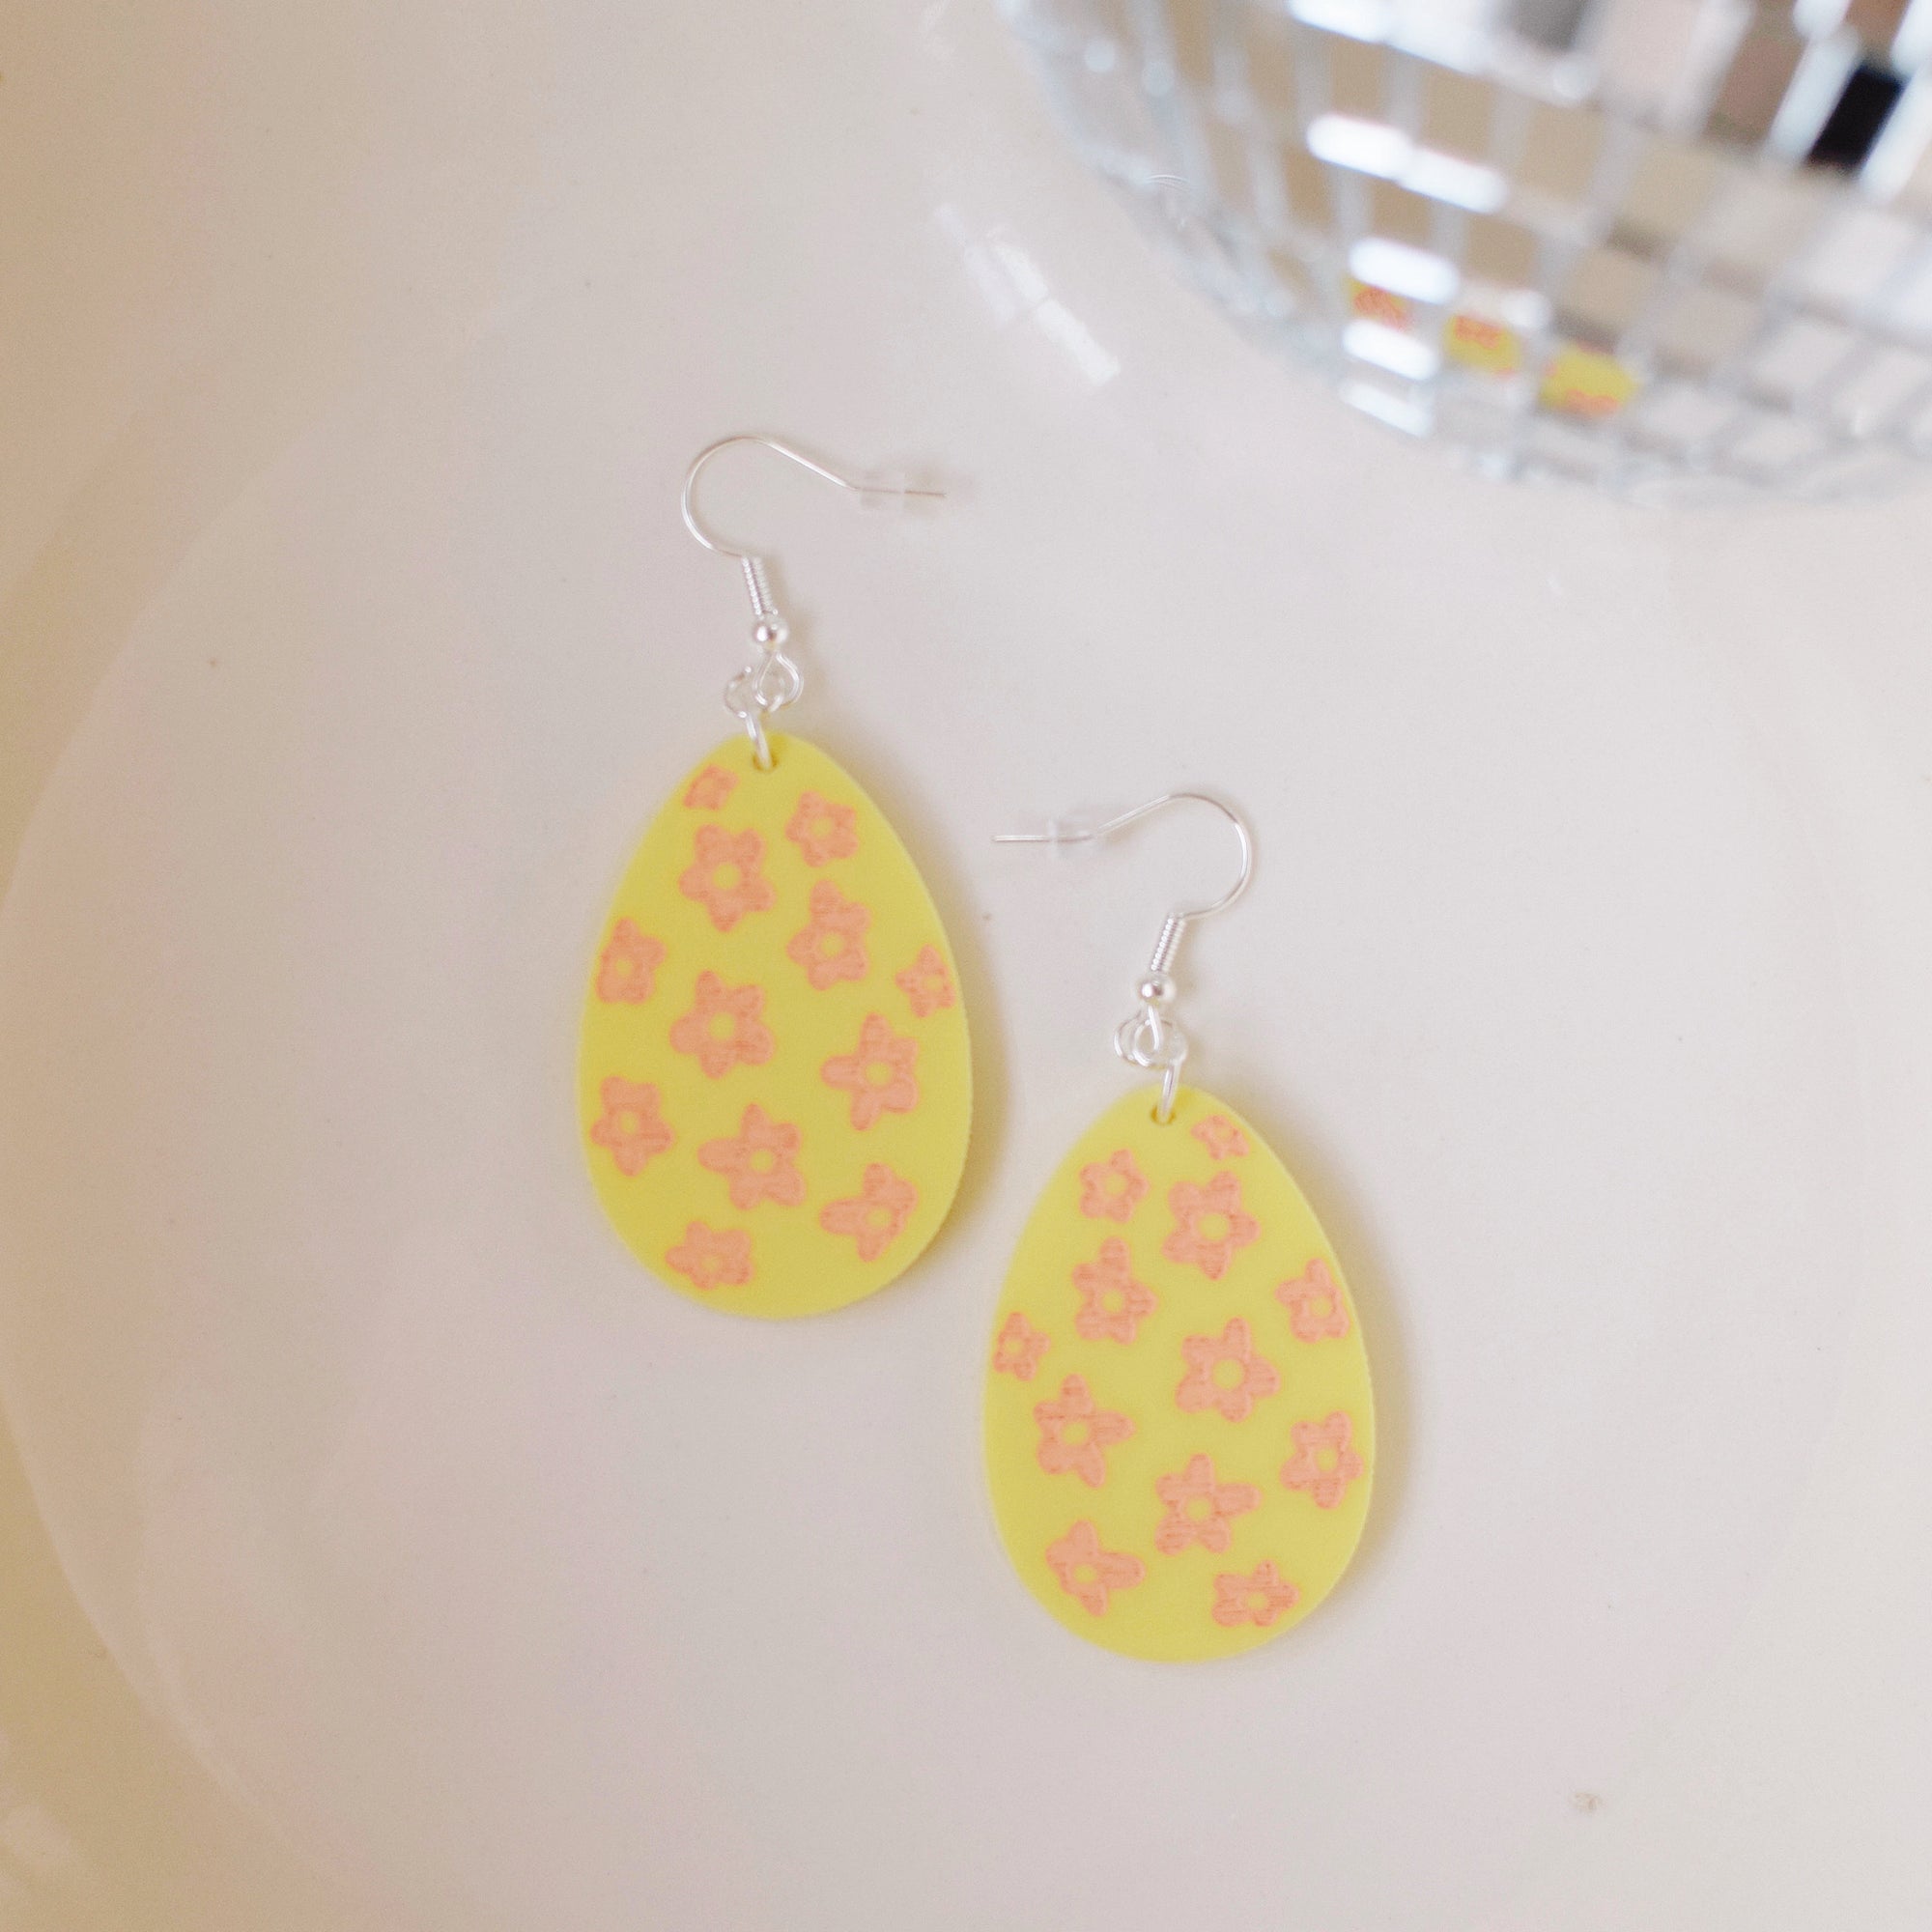 Earrings - Spring/Easter - Butter Yellow Floral Egg Dangles